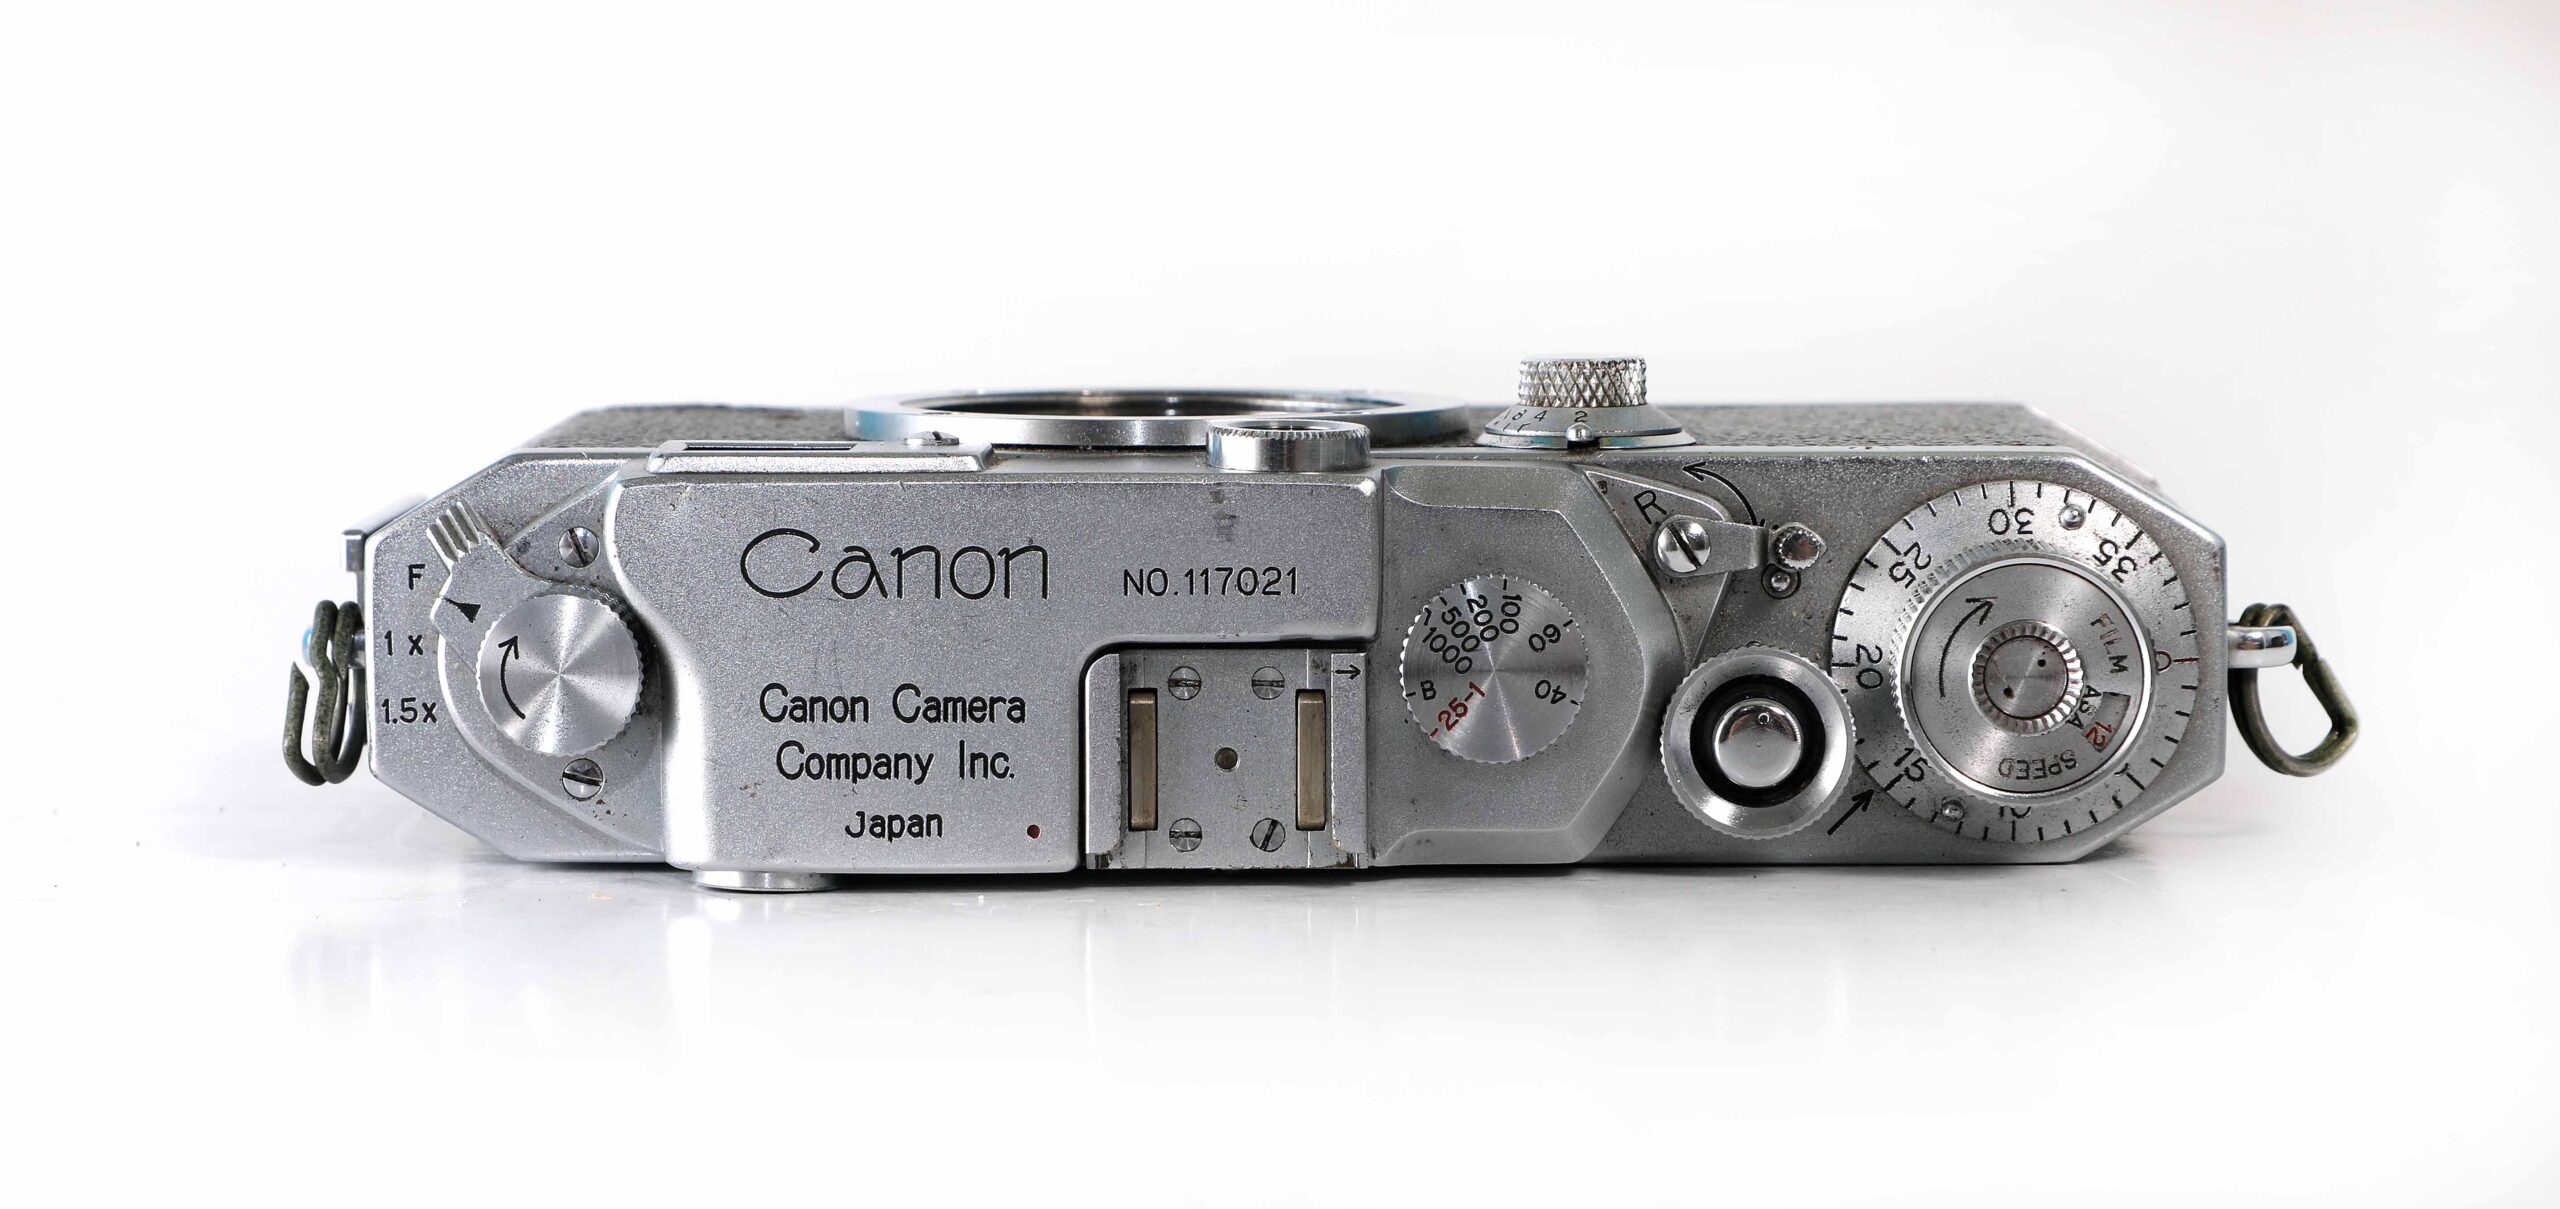 CANON Company Inc. Japan CANON LENS 50mm F1.5 ジャンク品